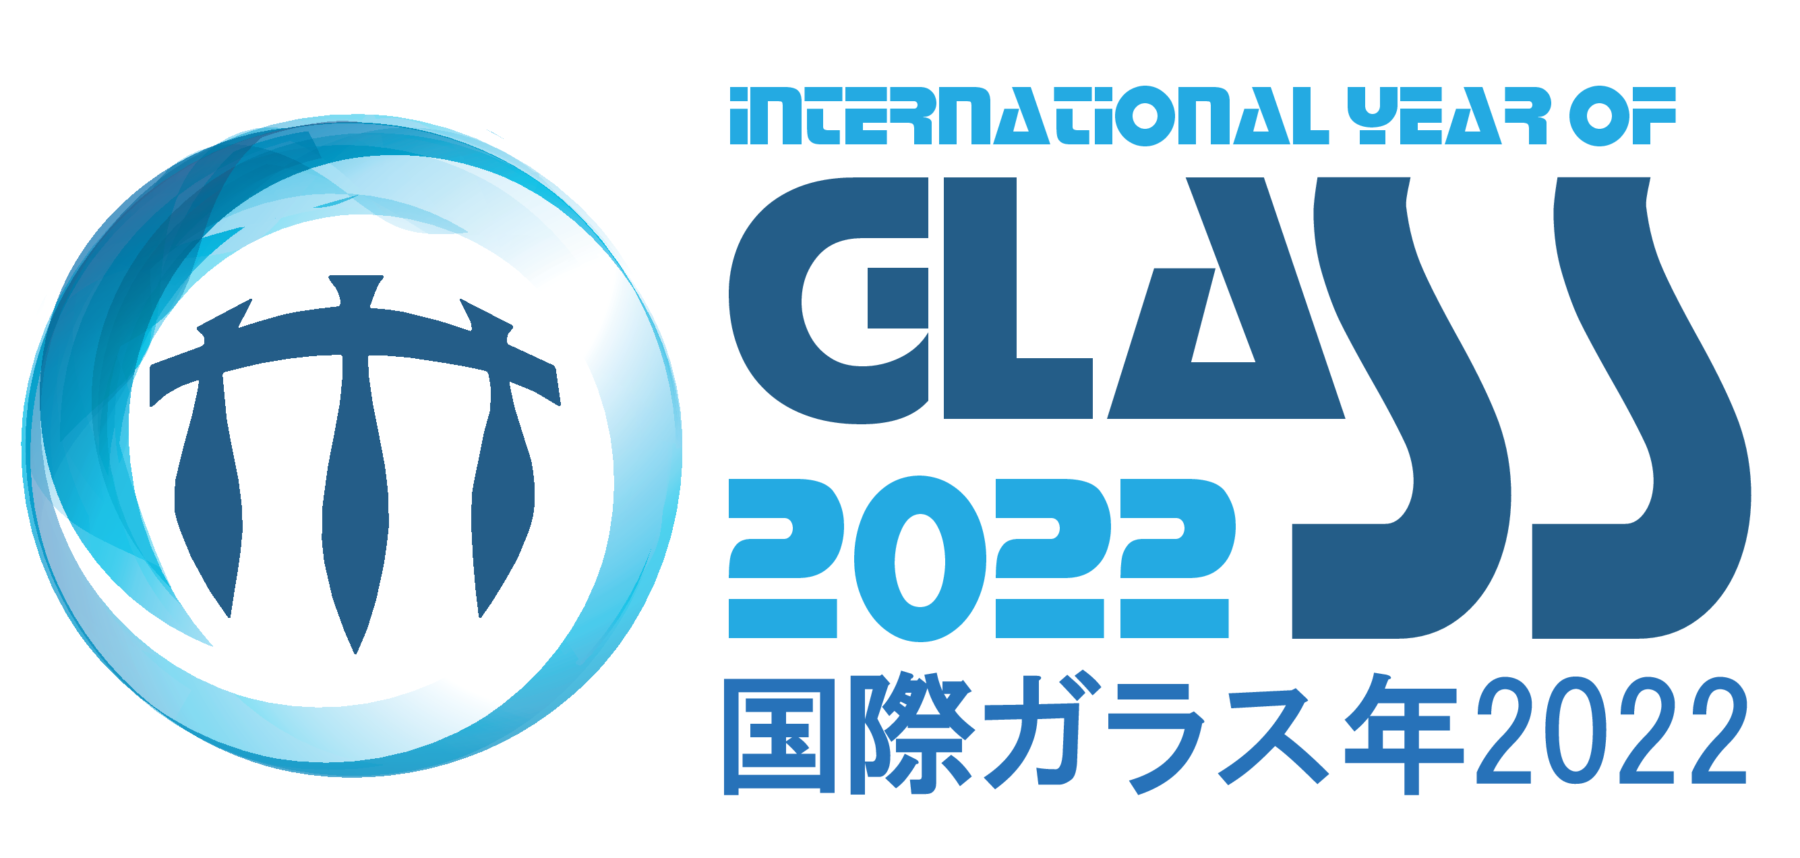 国際ガラス年2022 International Year of Glass 2022